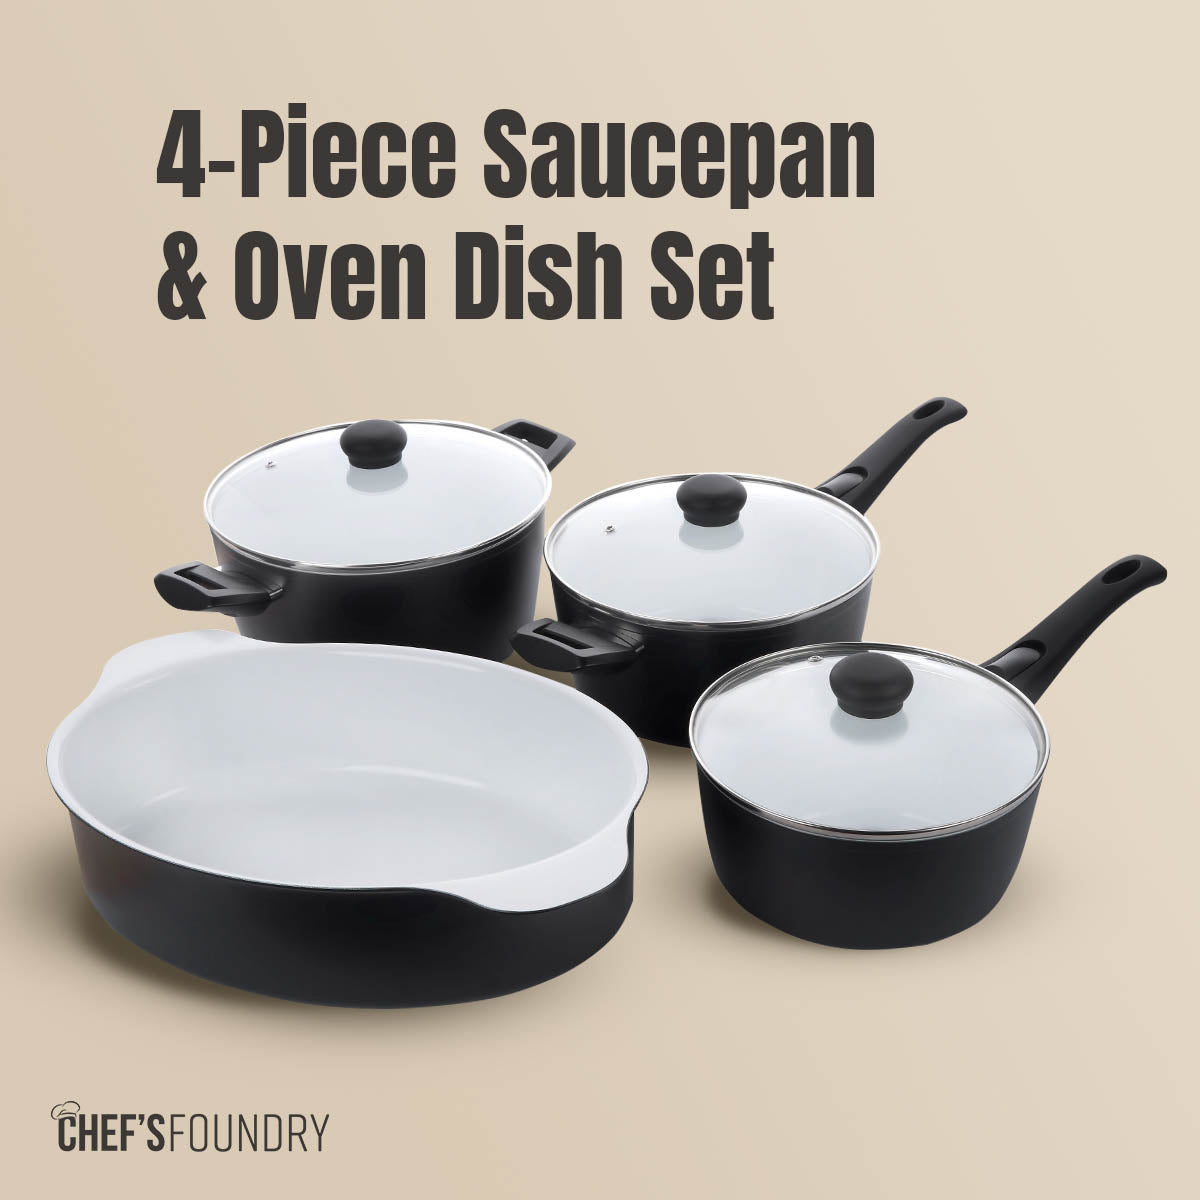 2 x P600 Saucepan & Oven Dish Set